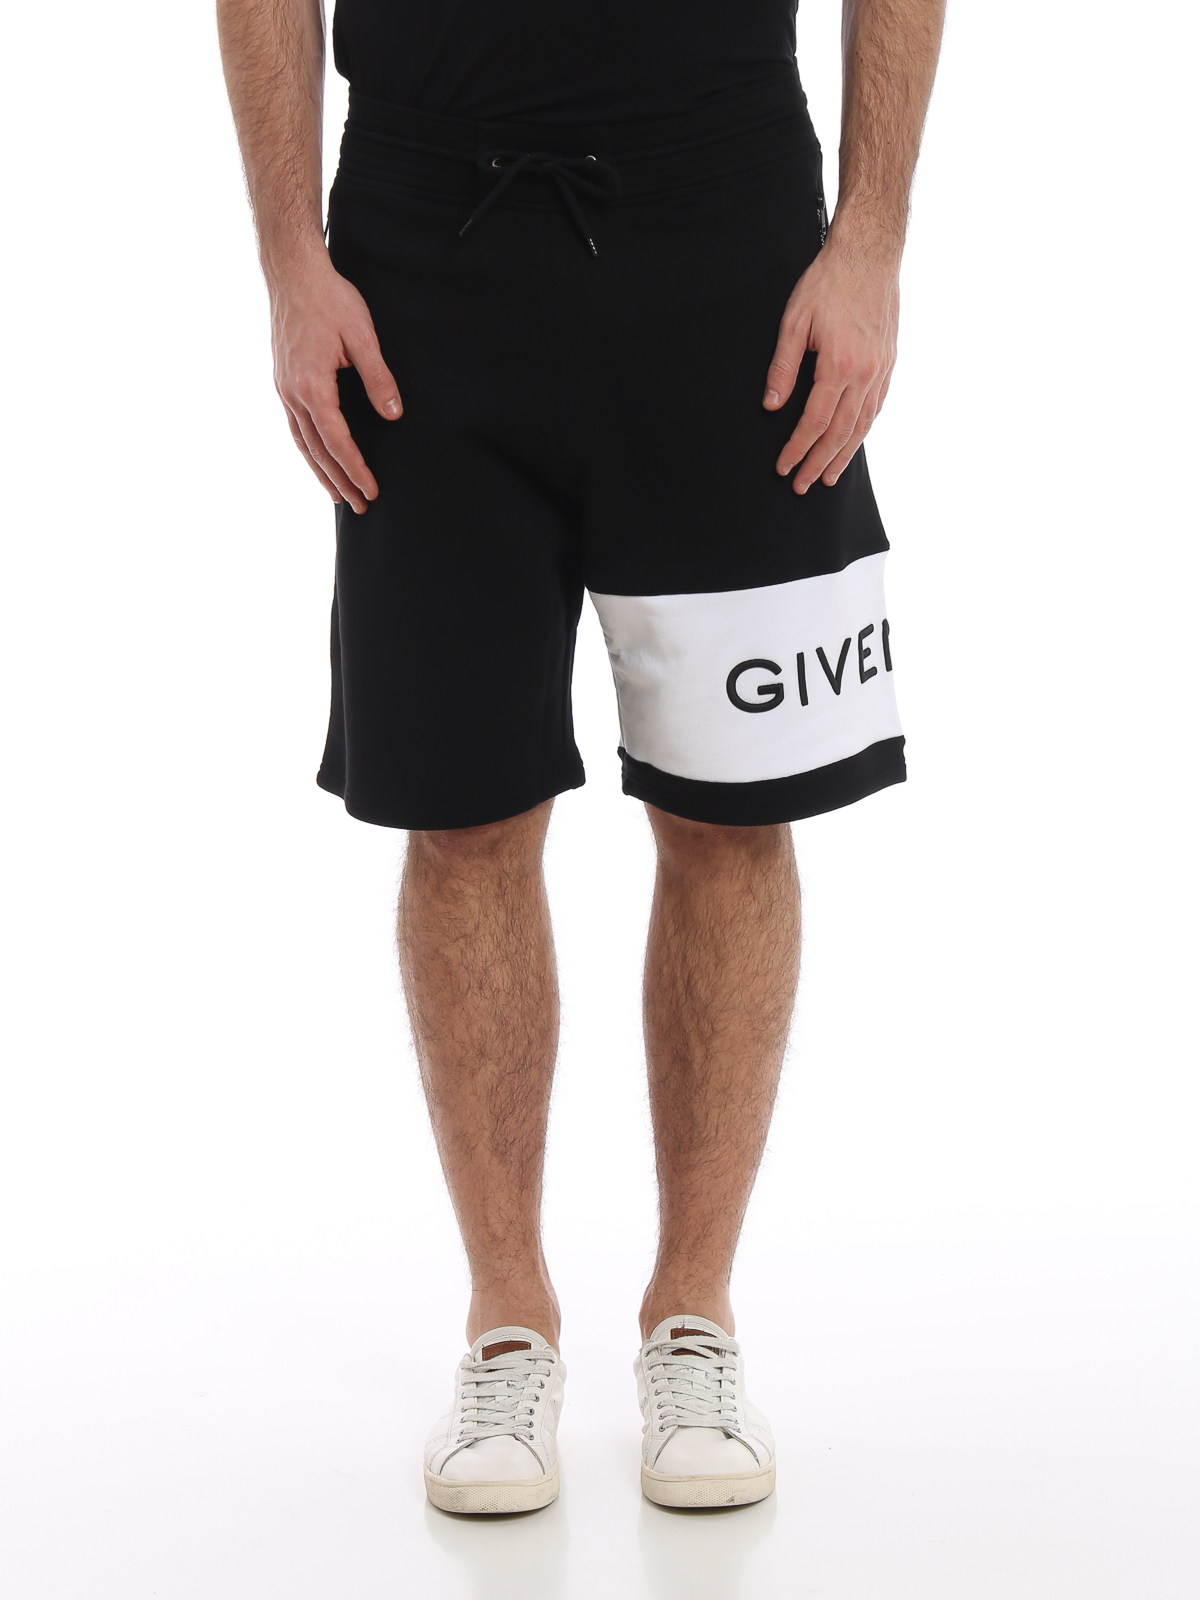 givenchy shorts